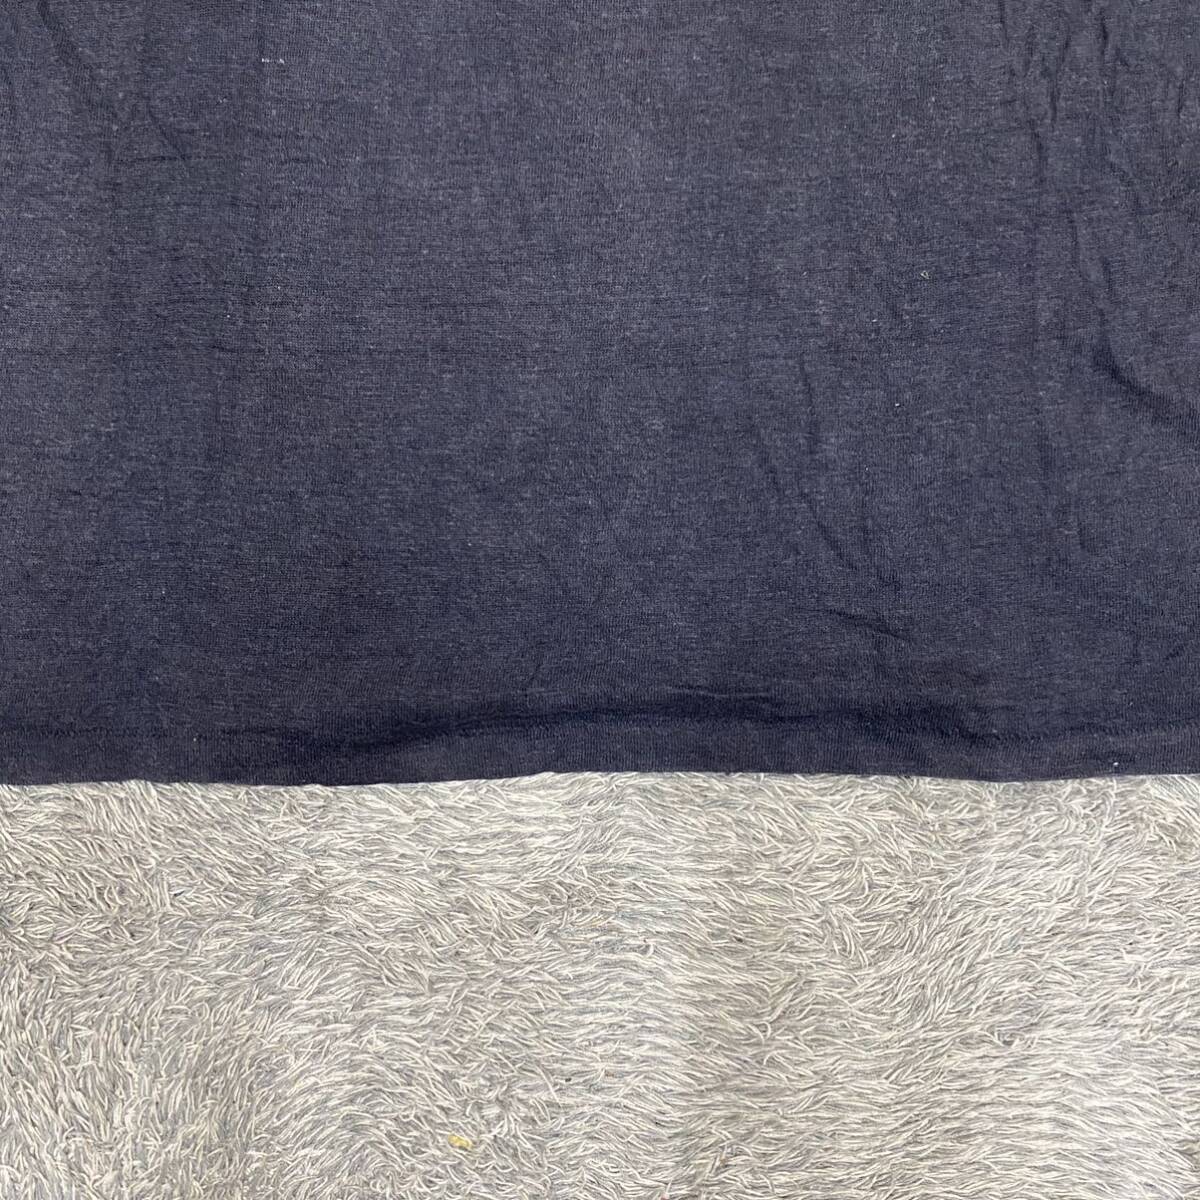 Acne Studios アクネストゥディオズ Tシャツ 半袖カットソー リネン 麻 サイズXS ネイビー 紺色 レディース トップス 最落なし （S19）_画像4